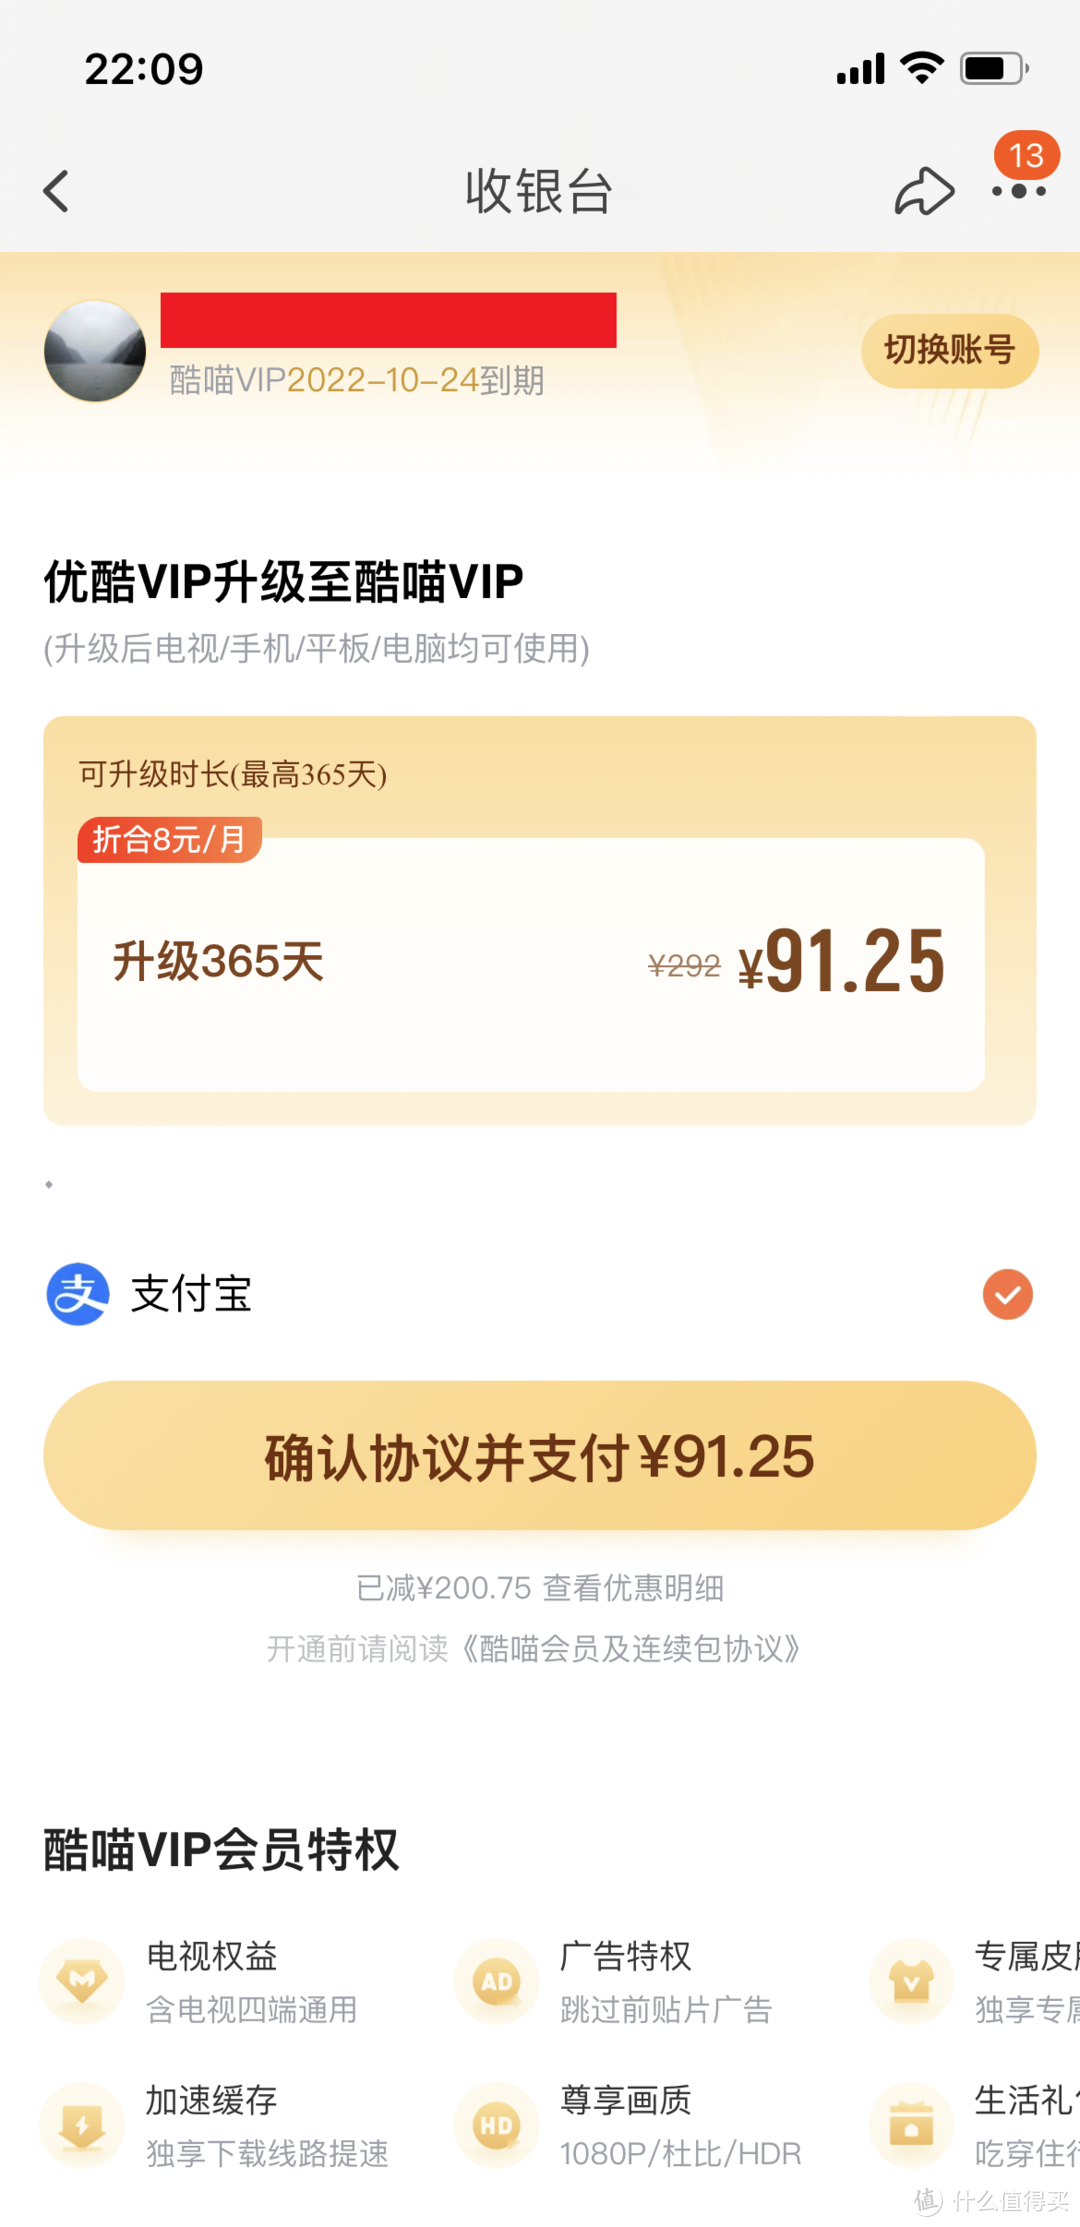 【酷喵VIP 1.8折福利】91.25年卡、8元月卡，每天仅需0.25元，1分钟轻松教程